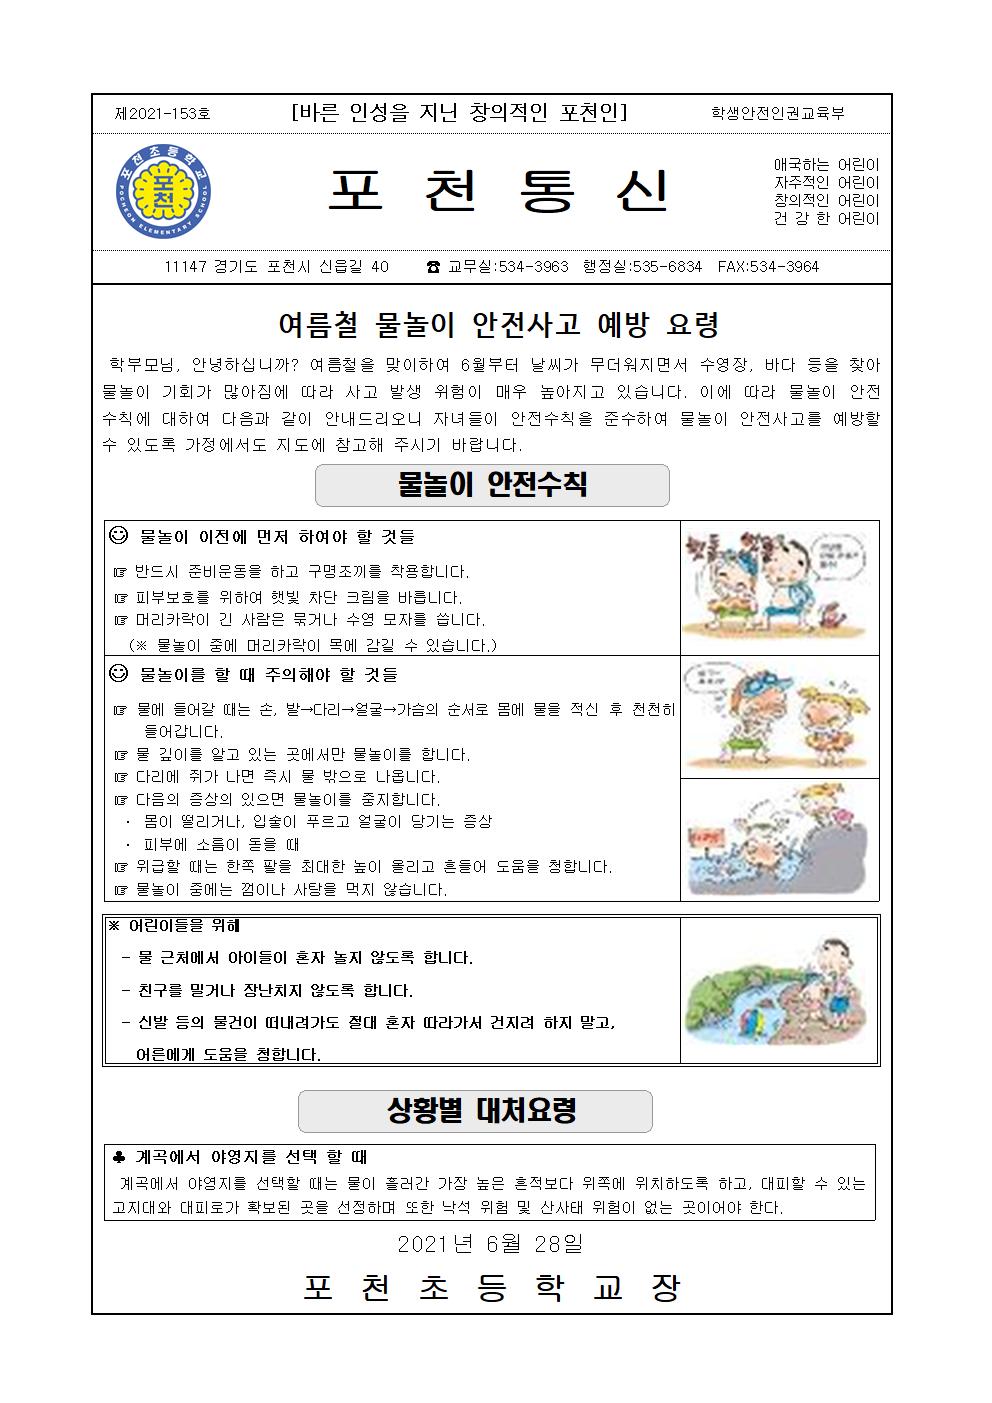 물놀이 안전사고 예방 가정통신문